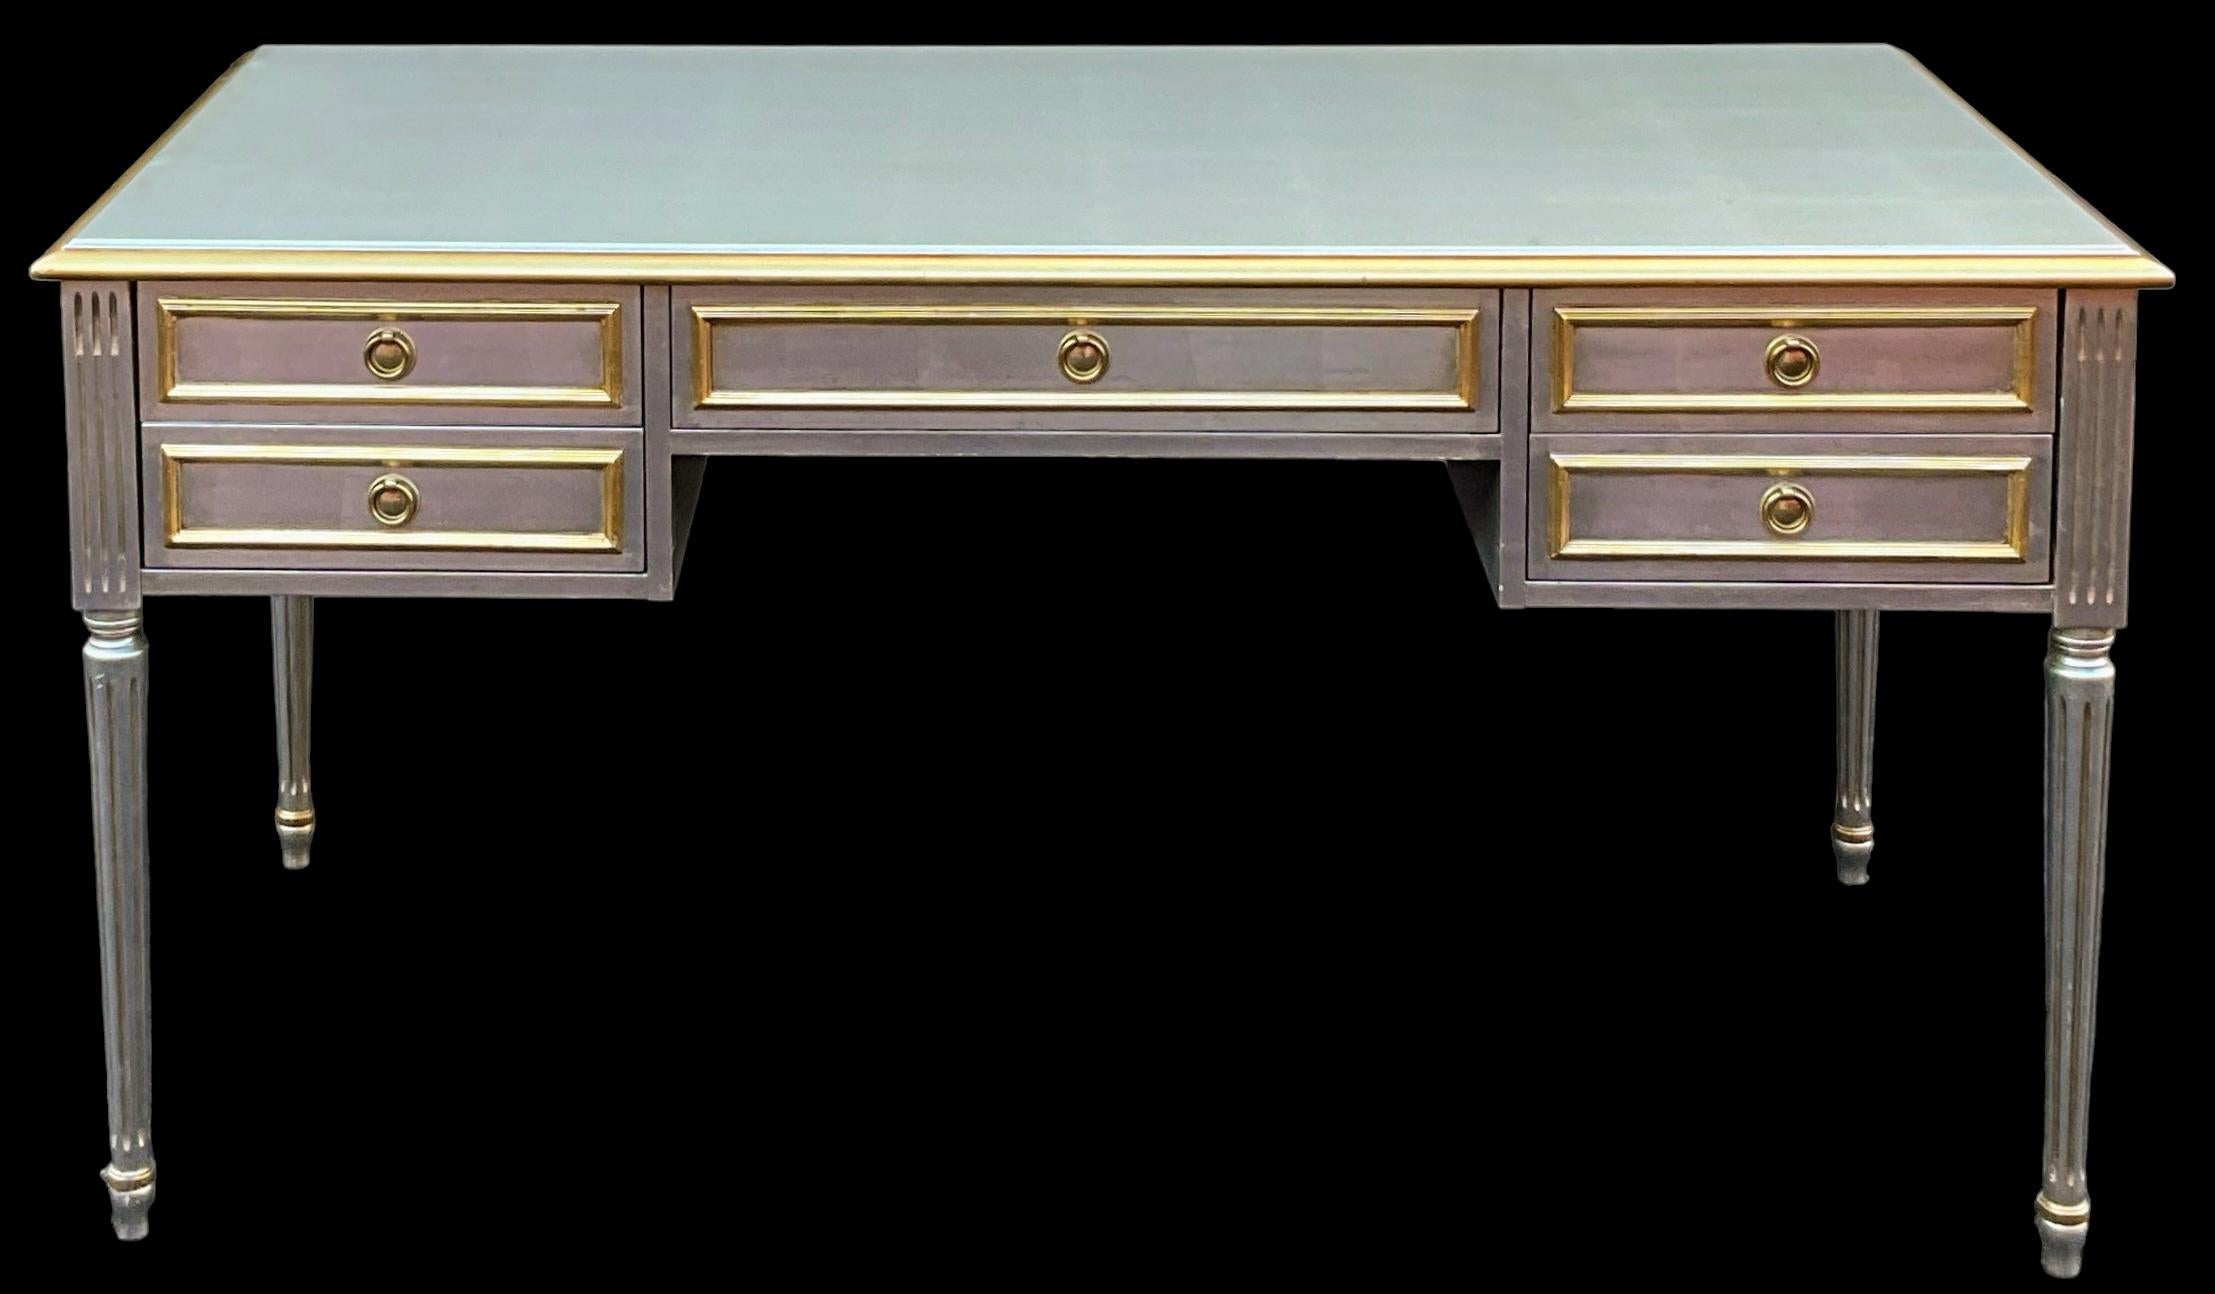 Das ist ein echter Hingucker! Es handelt sich um einen französischen Schreibtisch im Louis XVI-Stil, der in der Manier von Maison Jansen gefertigt wurde. Es ist unbeschriftet und in sehr gutem Zustand. Sie stammt wahrscheinlich aus den 1980er